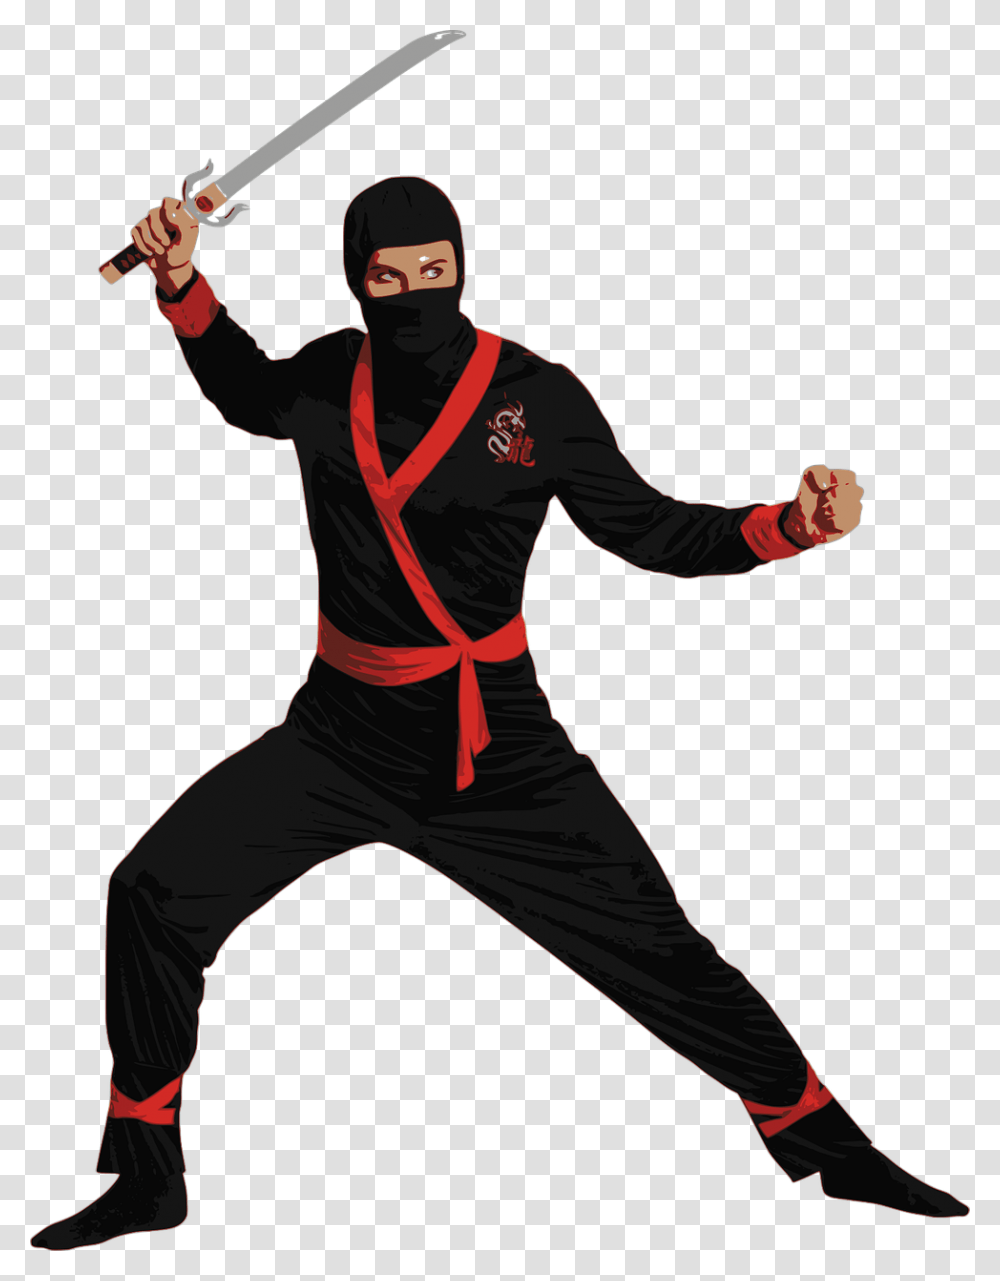 Ninja Master, Person, Human, Helmet Transparent Png